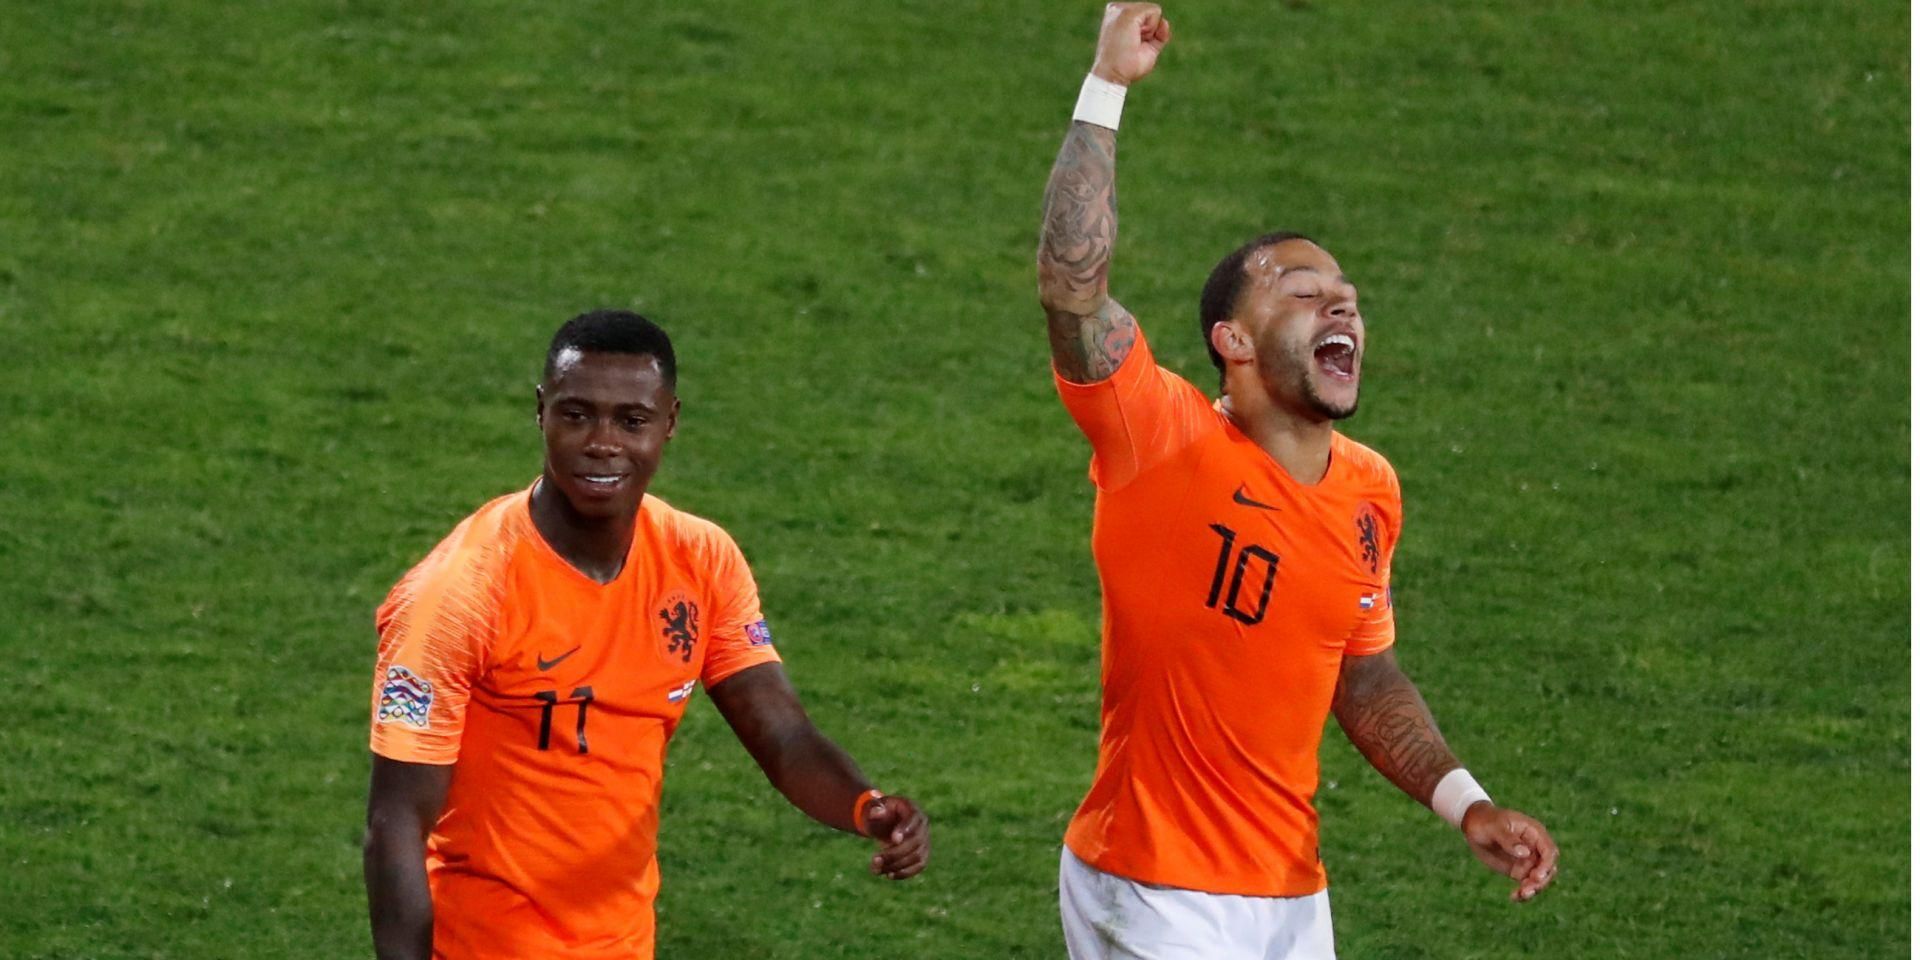 Португалия - Нидерланды: где смотреть онлайн 09.06.2019 - финал Лиги наций